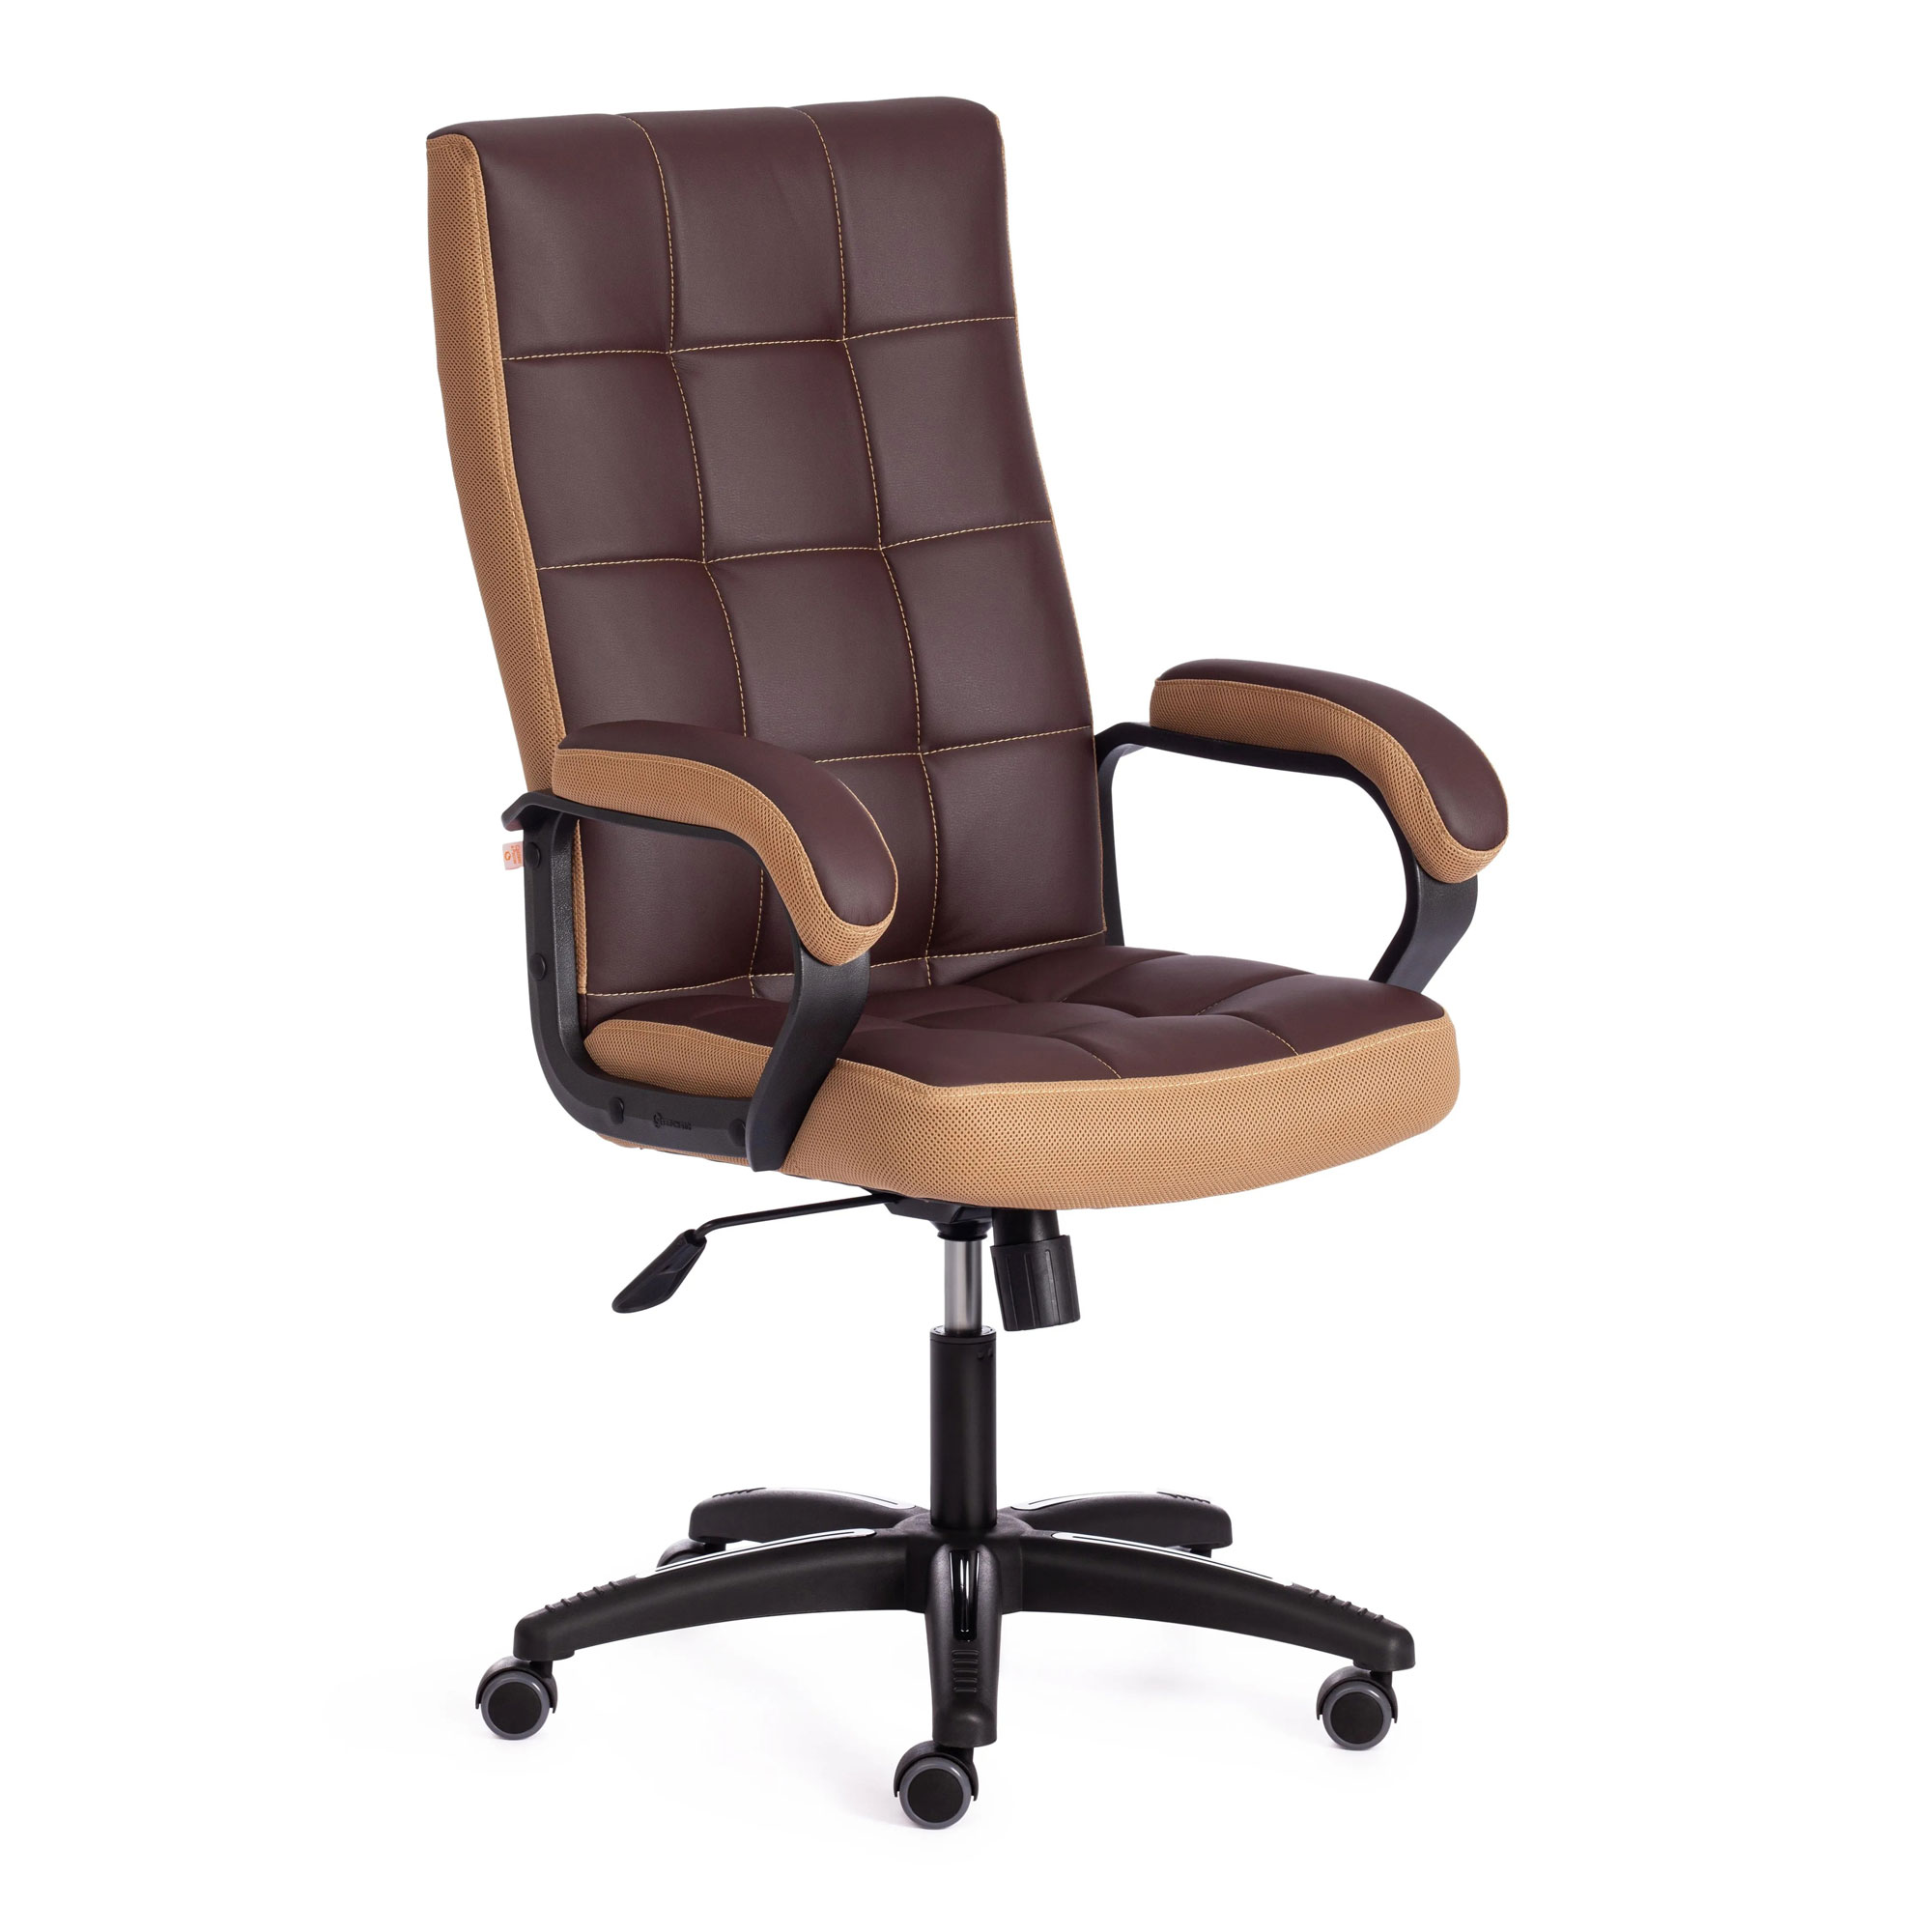 Кресло компьютерное TC искусственная кожа коричневое с бронзовым 61х47х126 см кресло компьютерное tc driver искусственная кожа чёрное с красным 55х49х126 см